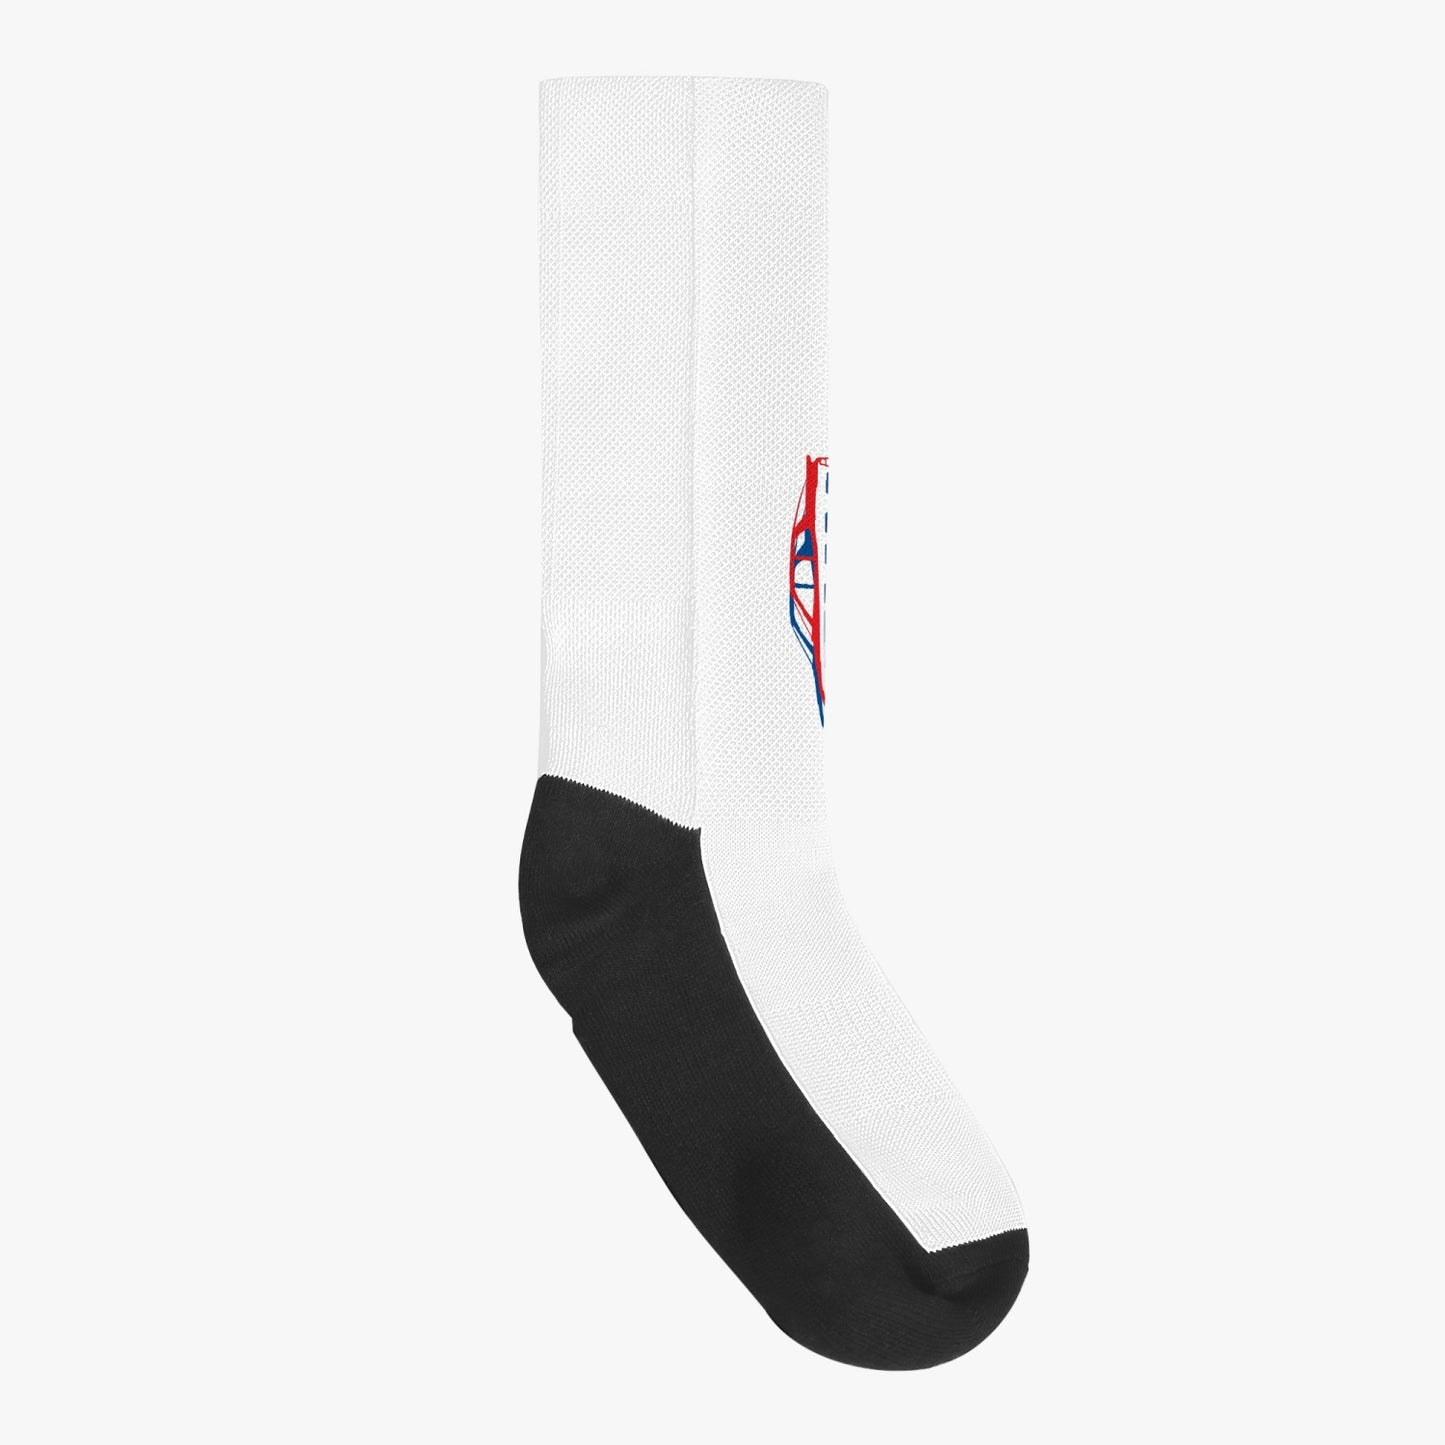 944. Reinforced Sports Socks